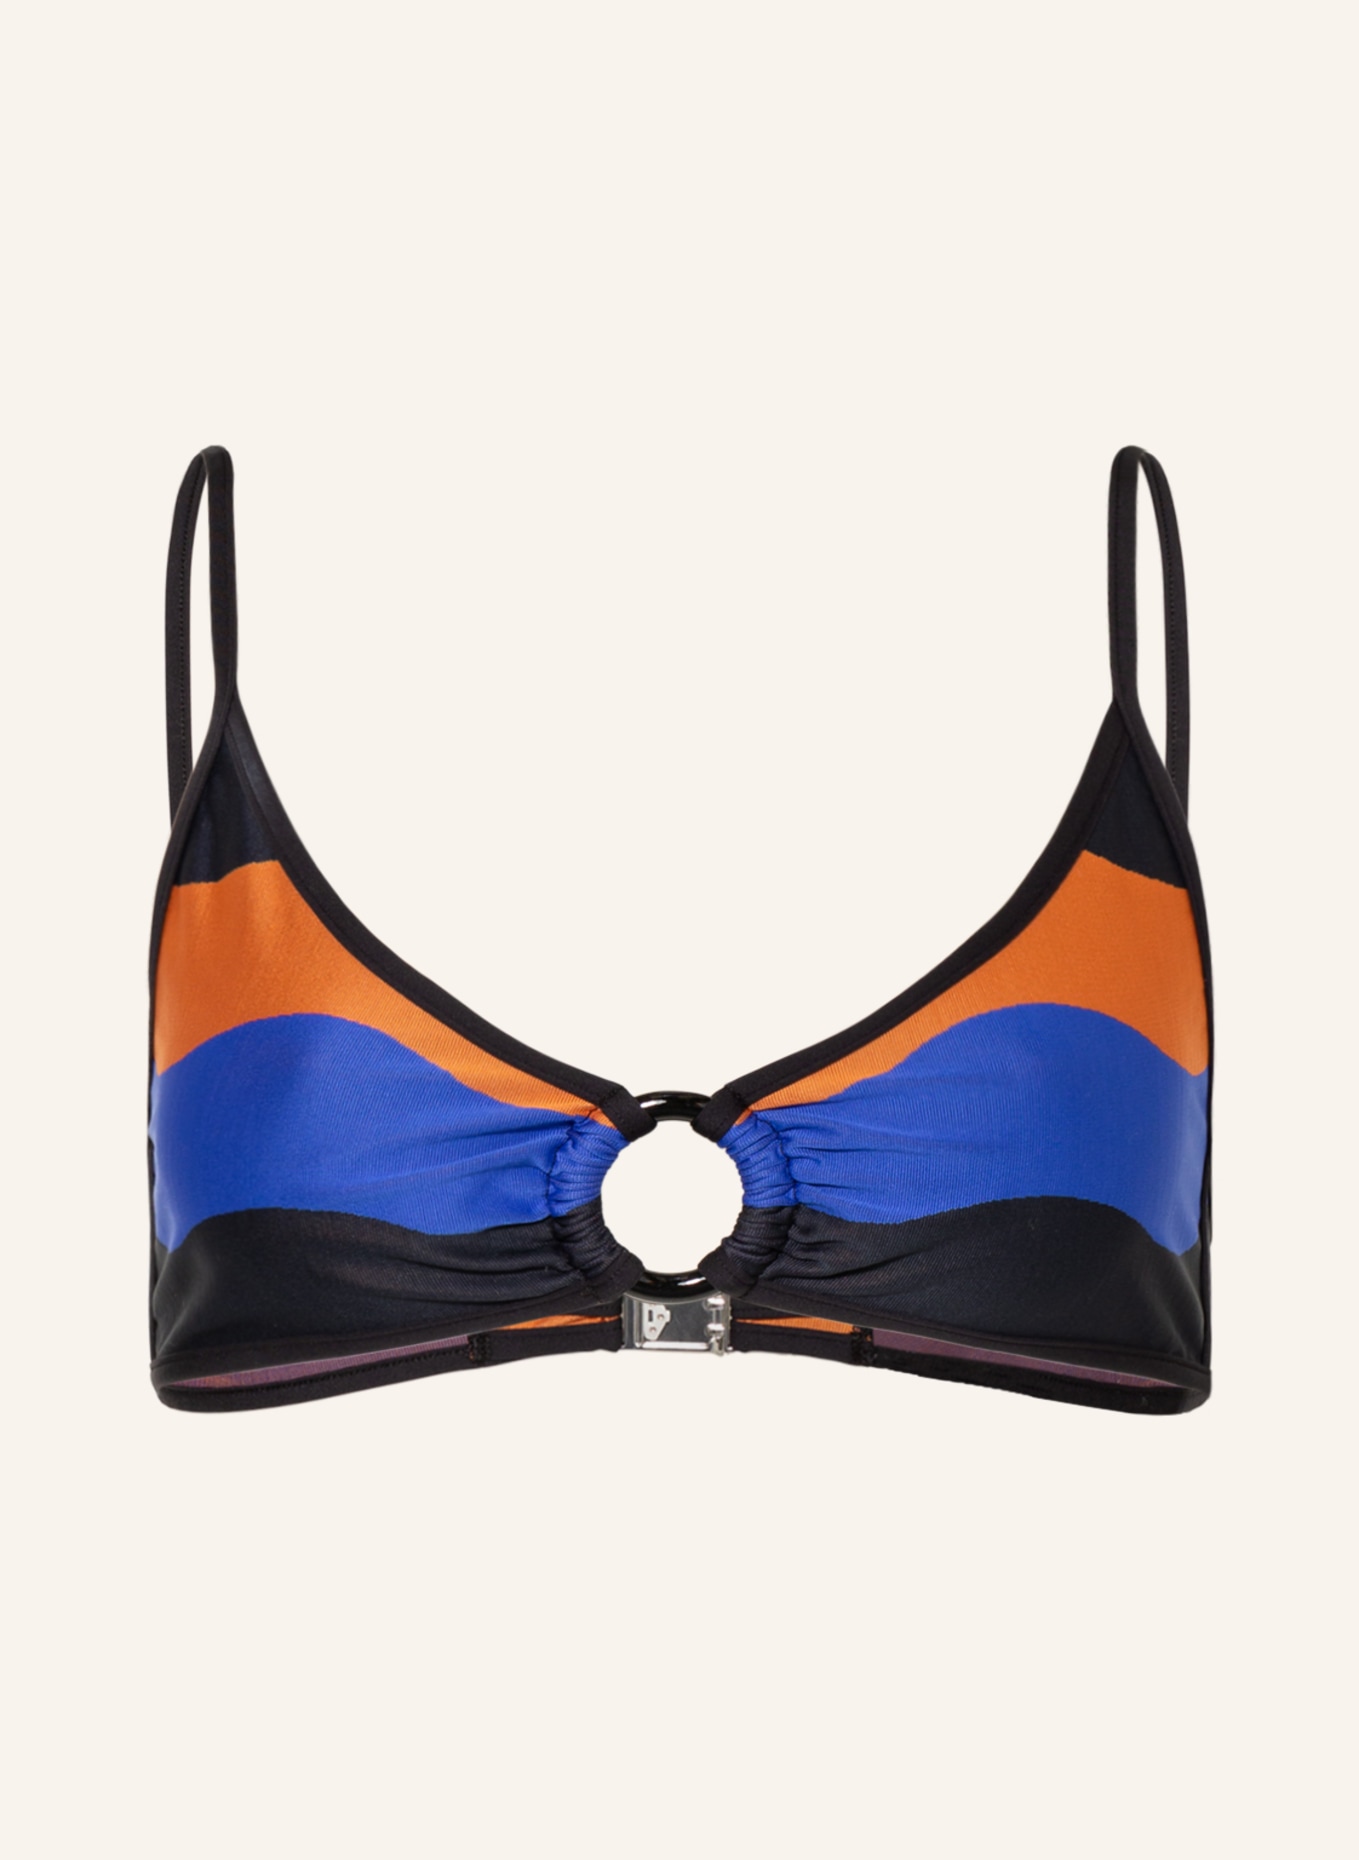 ANDRES SARDA Bralette-Bikini-Top DENIS, Farbe: SCHWARZ/ BLAU/ LILA (Bild 1)